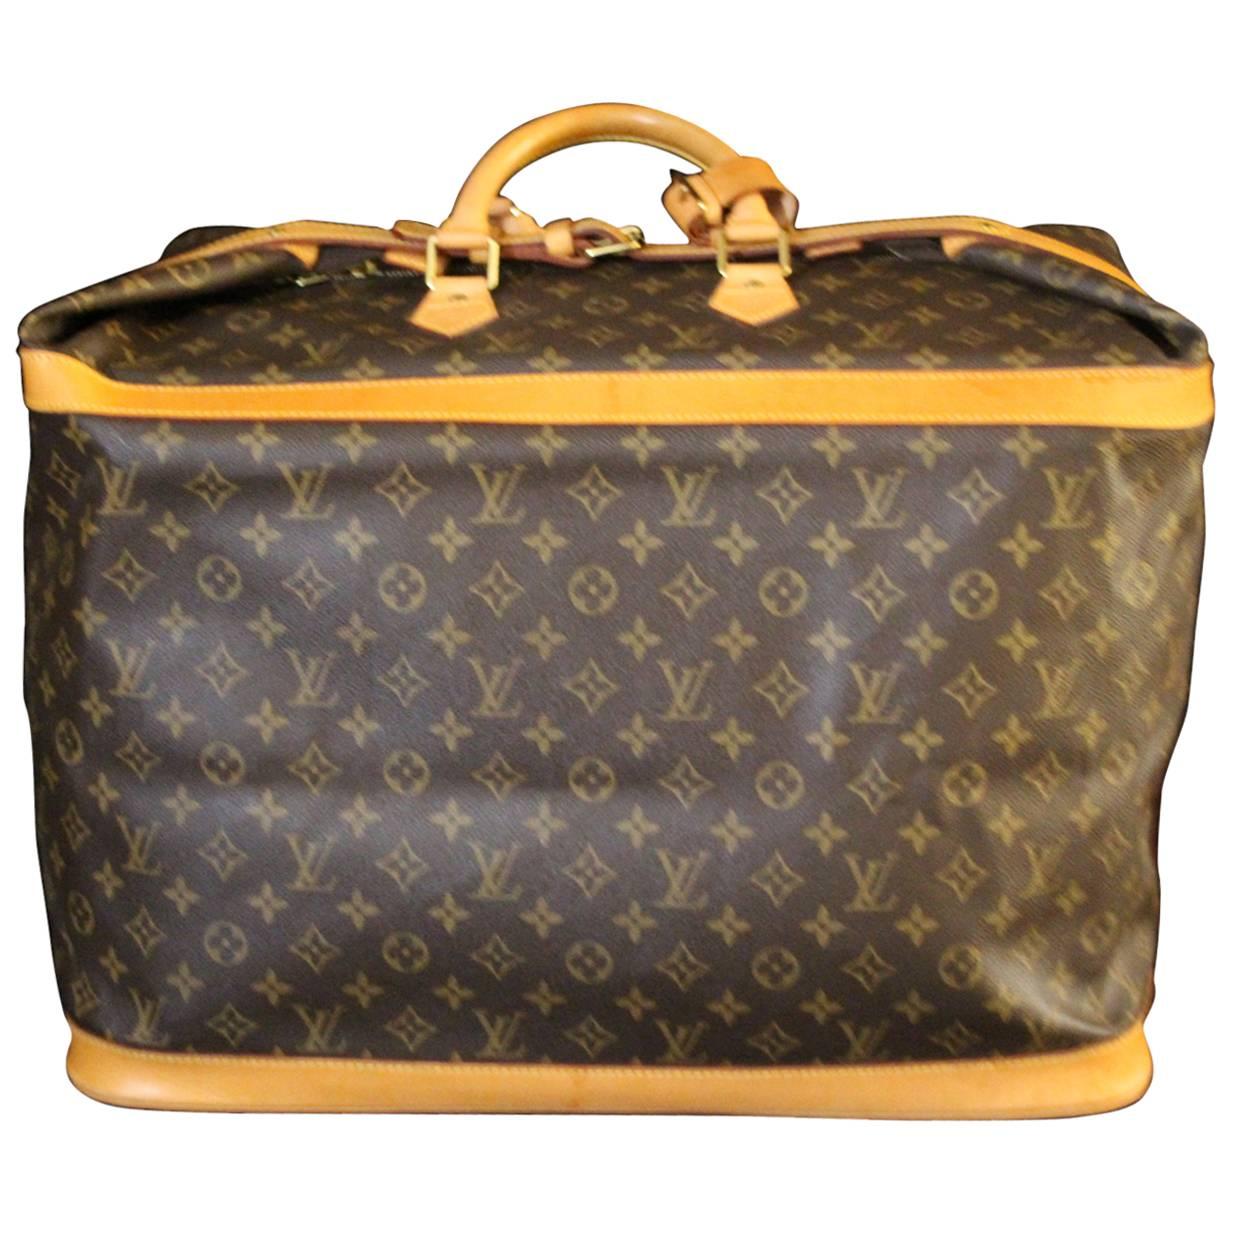 Louis Vuitton Large Travel Bag 50